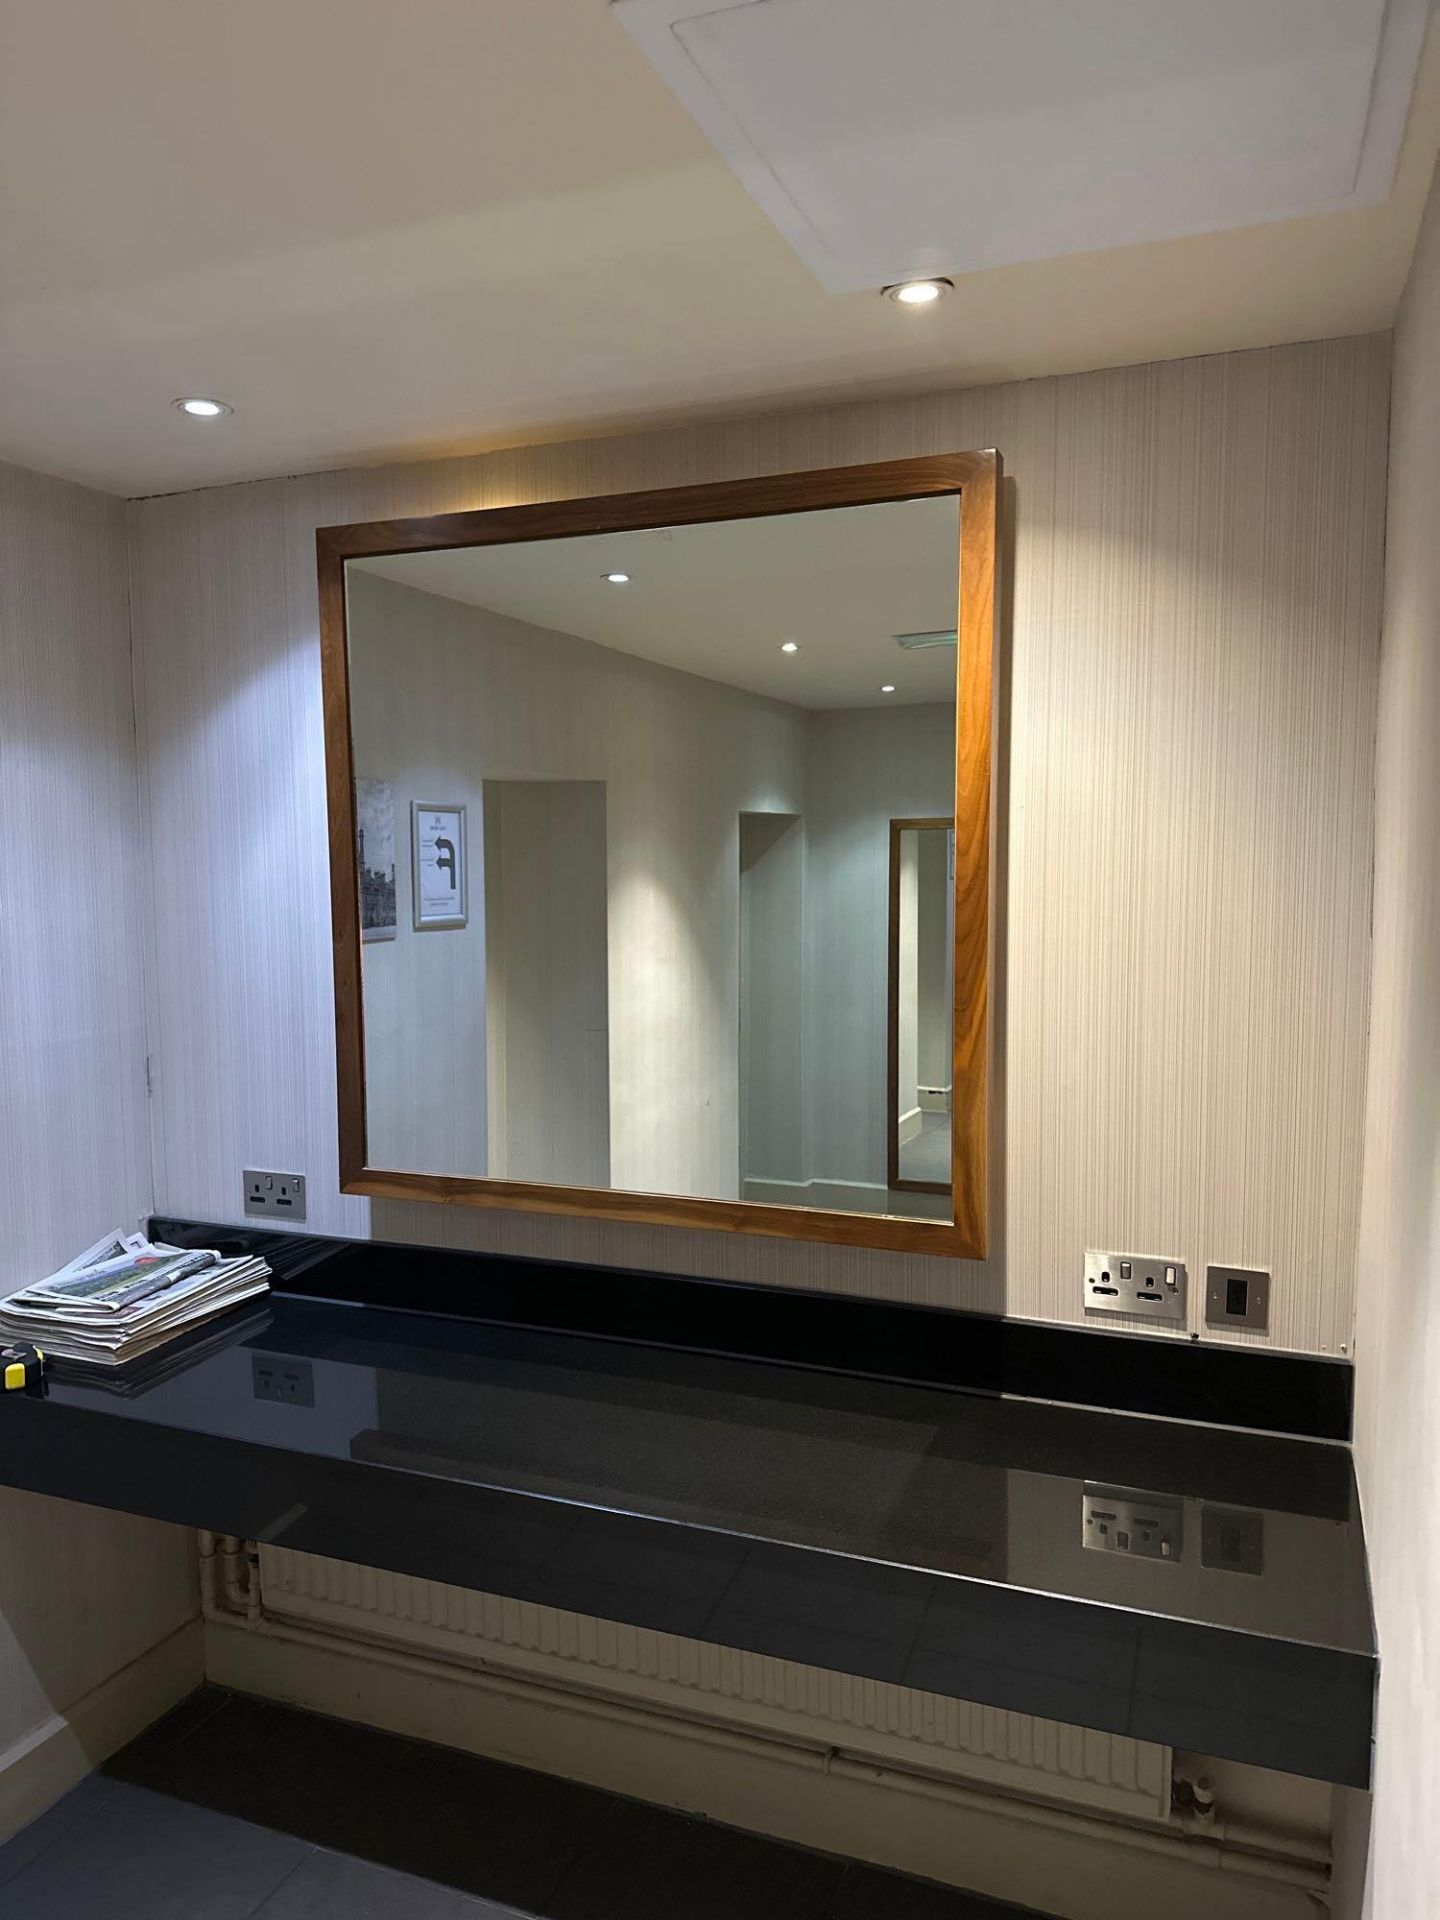 Wooden framed accent mirror 120 x 120cm ( Location: mens locker room ) - Image 2 of 2